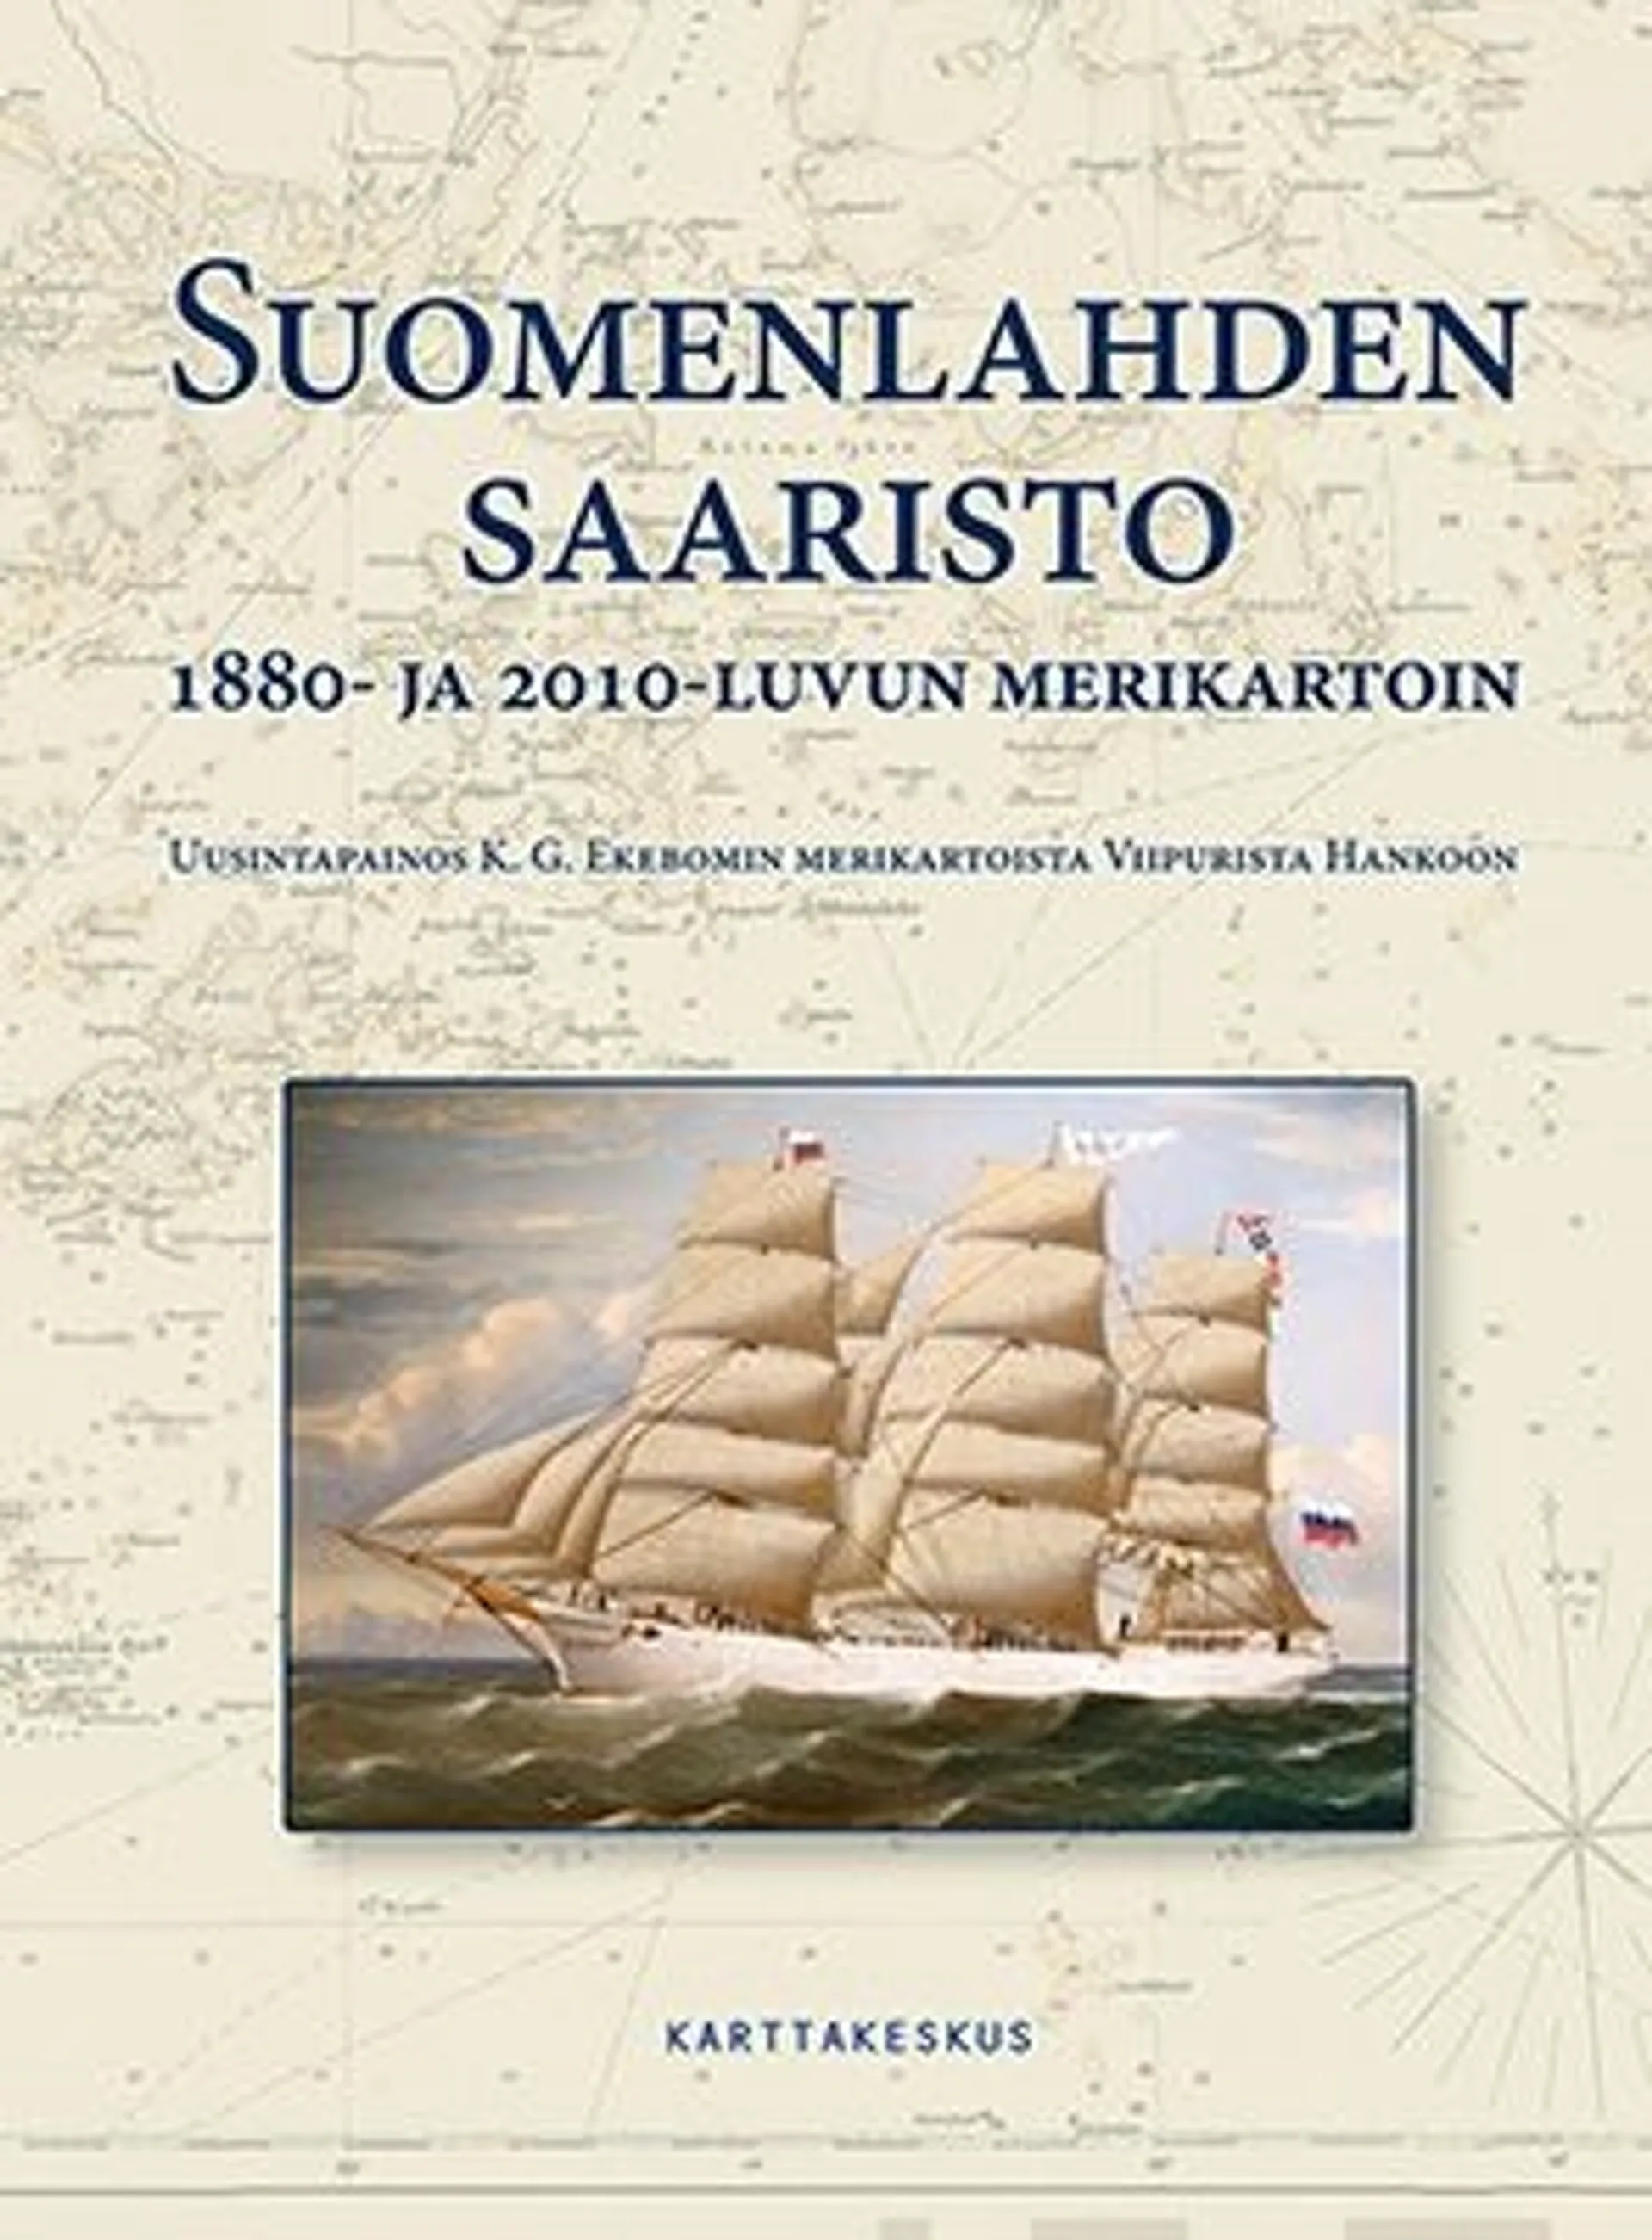 Strang, Suomenlahden saaristo 1880- ja 2010-luvun merikartoin